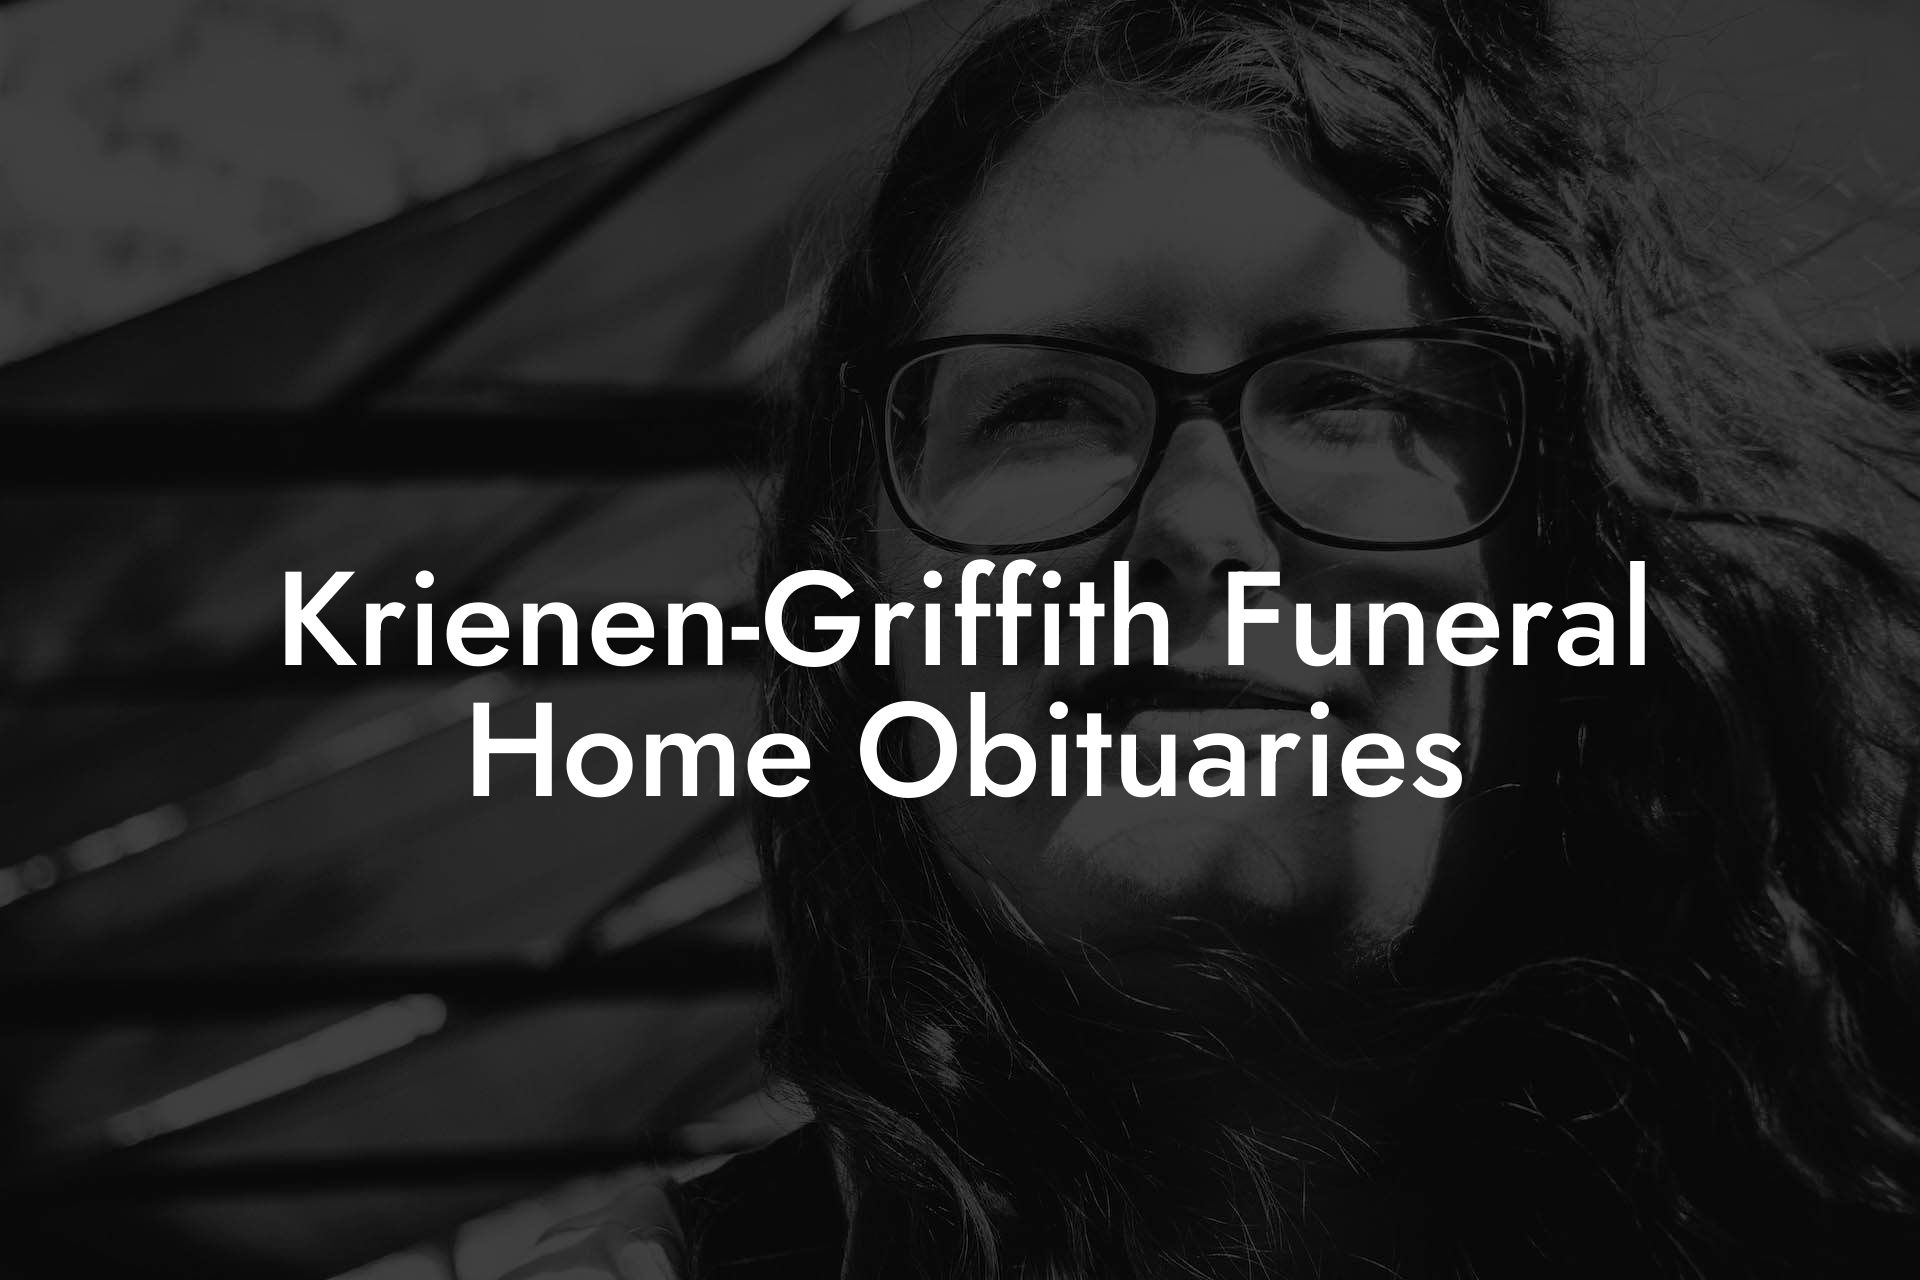 Krienen-Griffith Funeral Home Obituaries